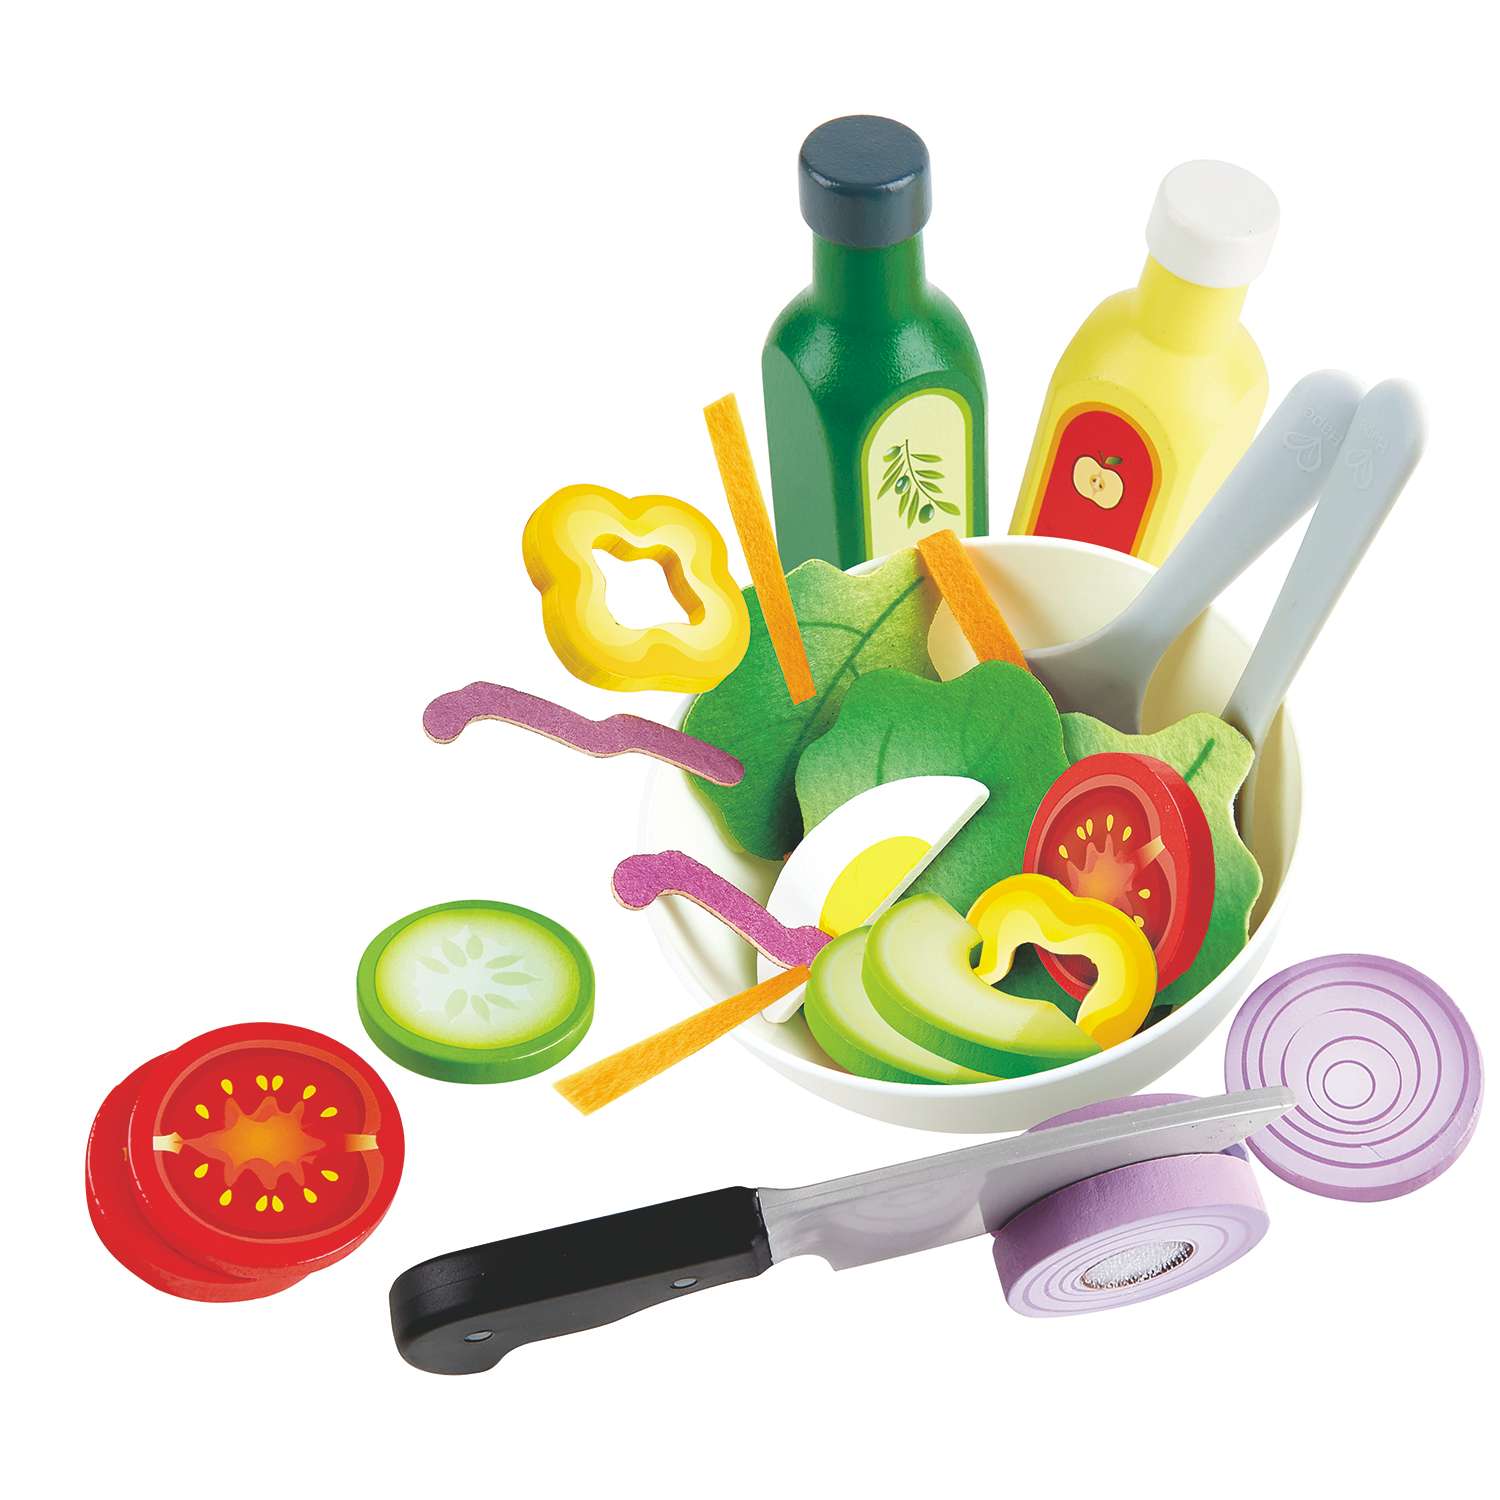 Игрушка HAPE Овощной салат 40 предметов в наборе игрушечная еда и аксессуары - фото 2